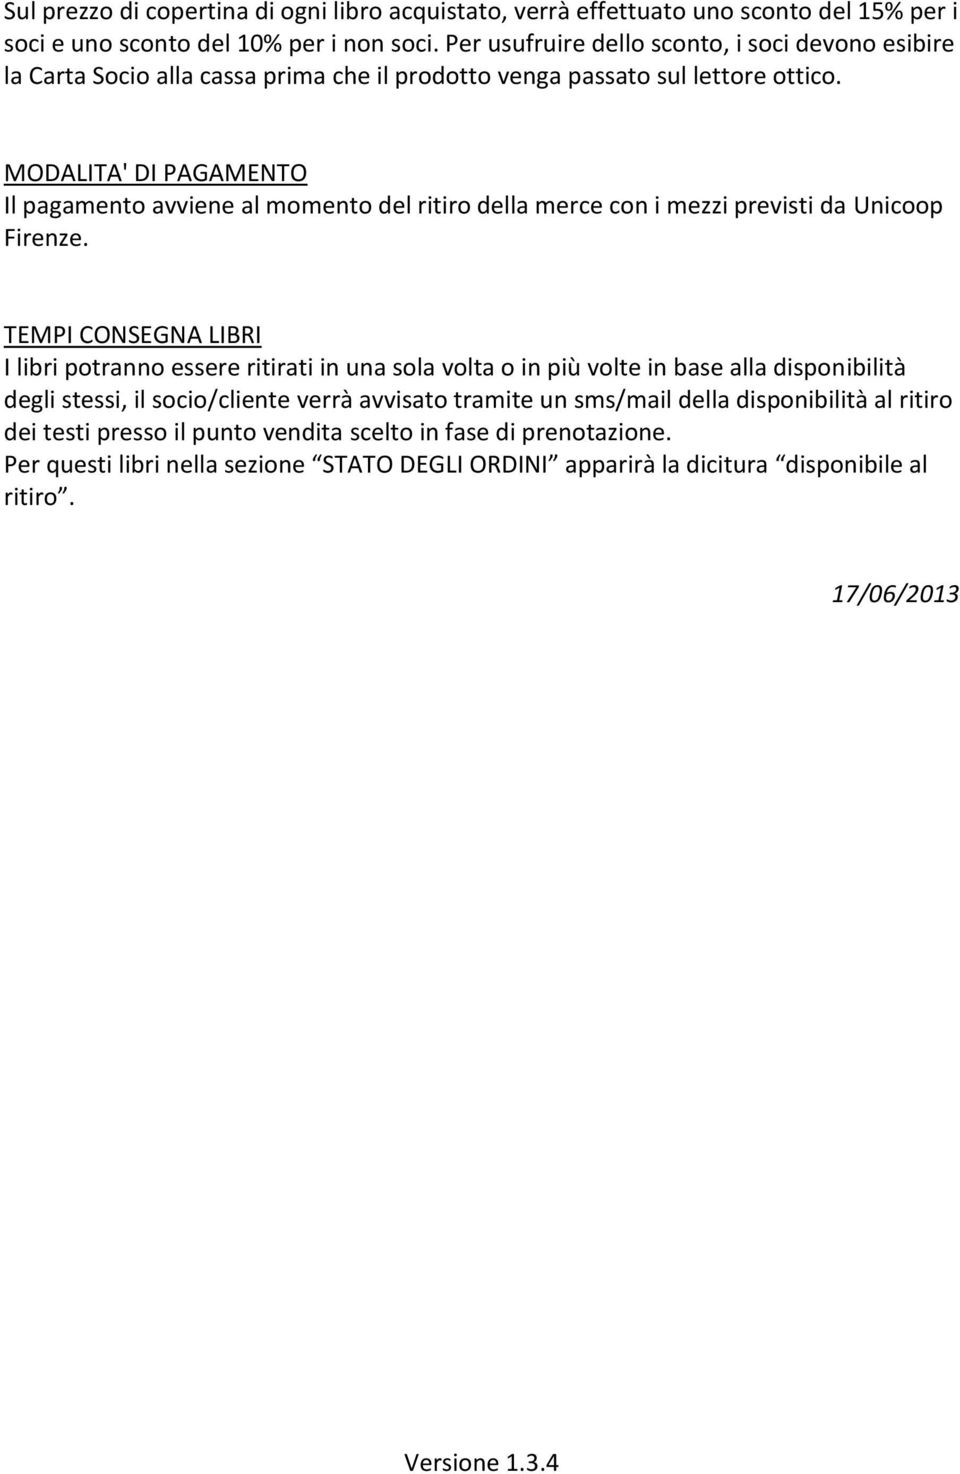 MODALITA' DI PAGAMENTO Il pagamento avviene al momento del ritiro della merce con i mezzi previsti da Unicoop Firenze.